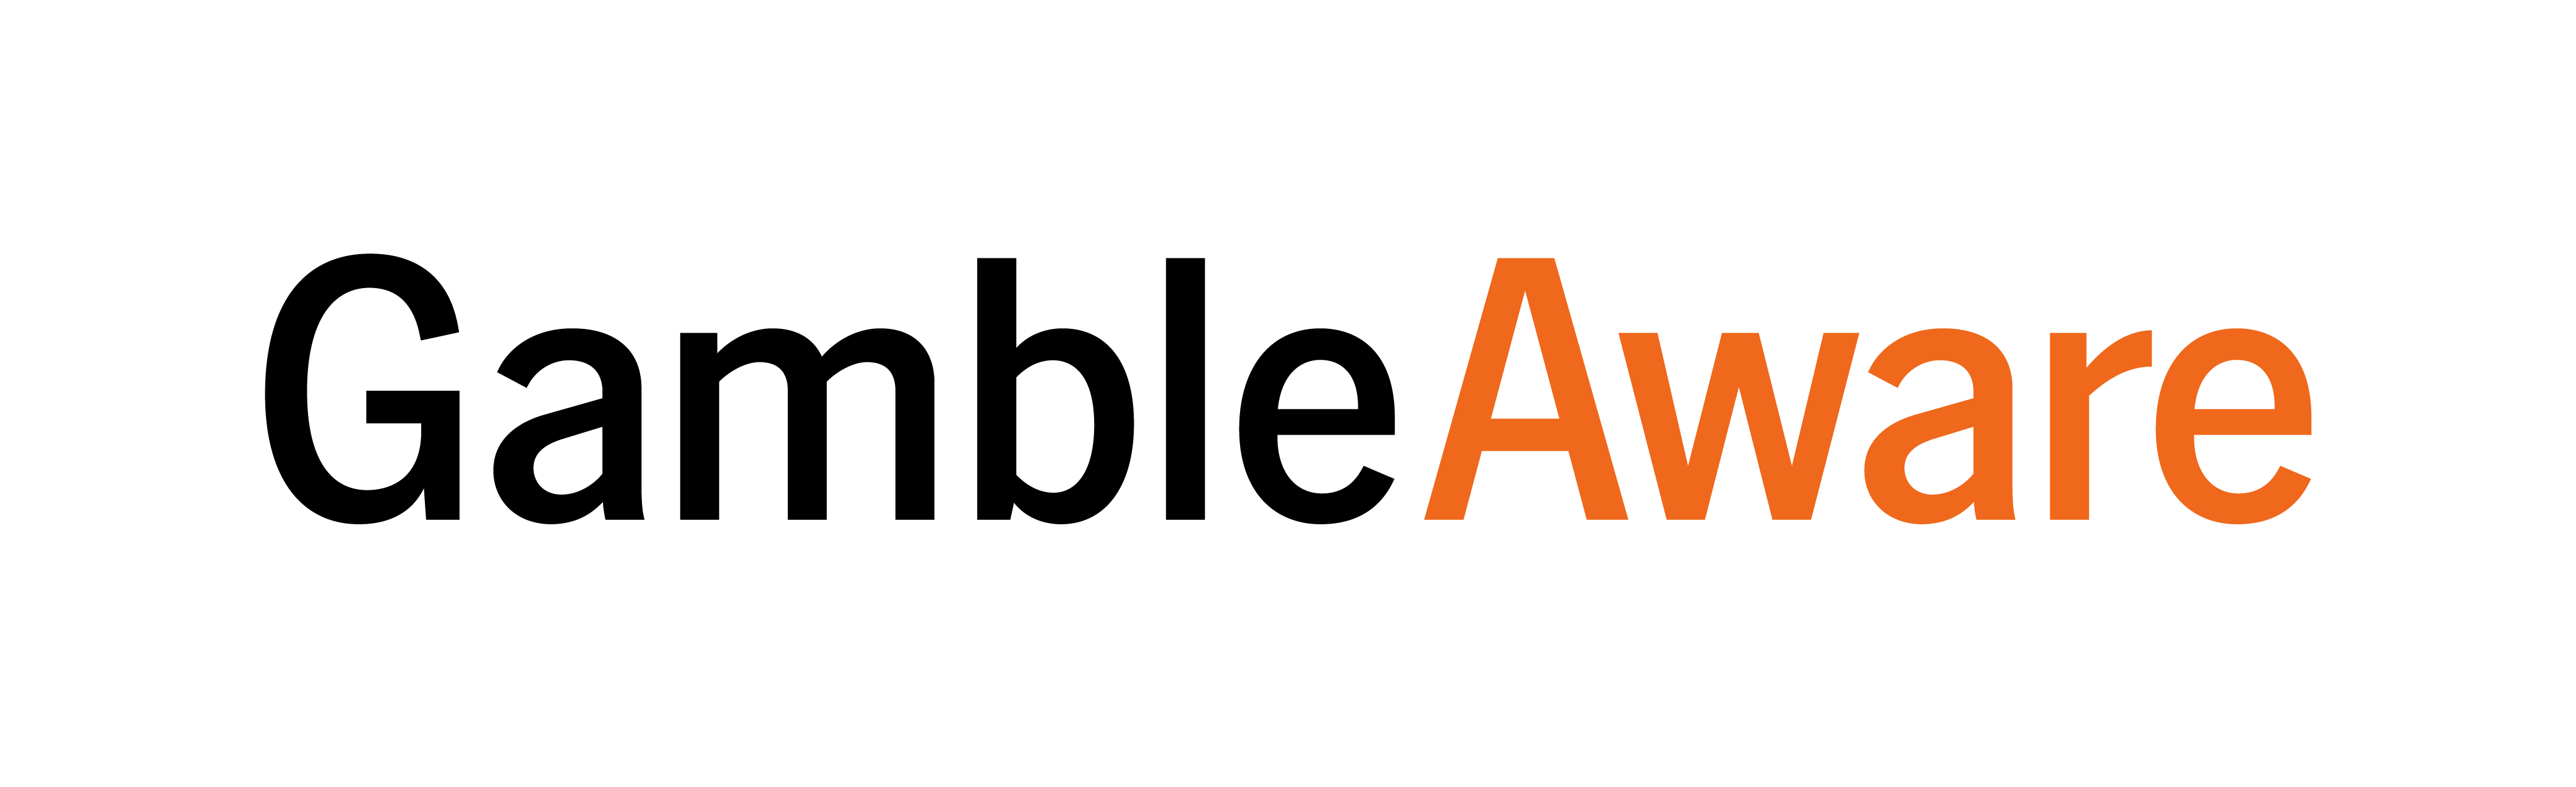 GambleAware logo